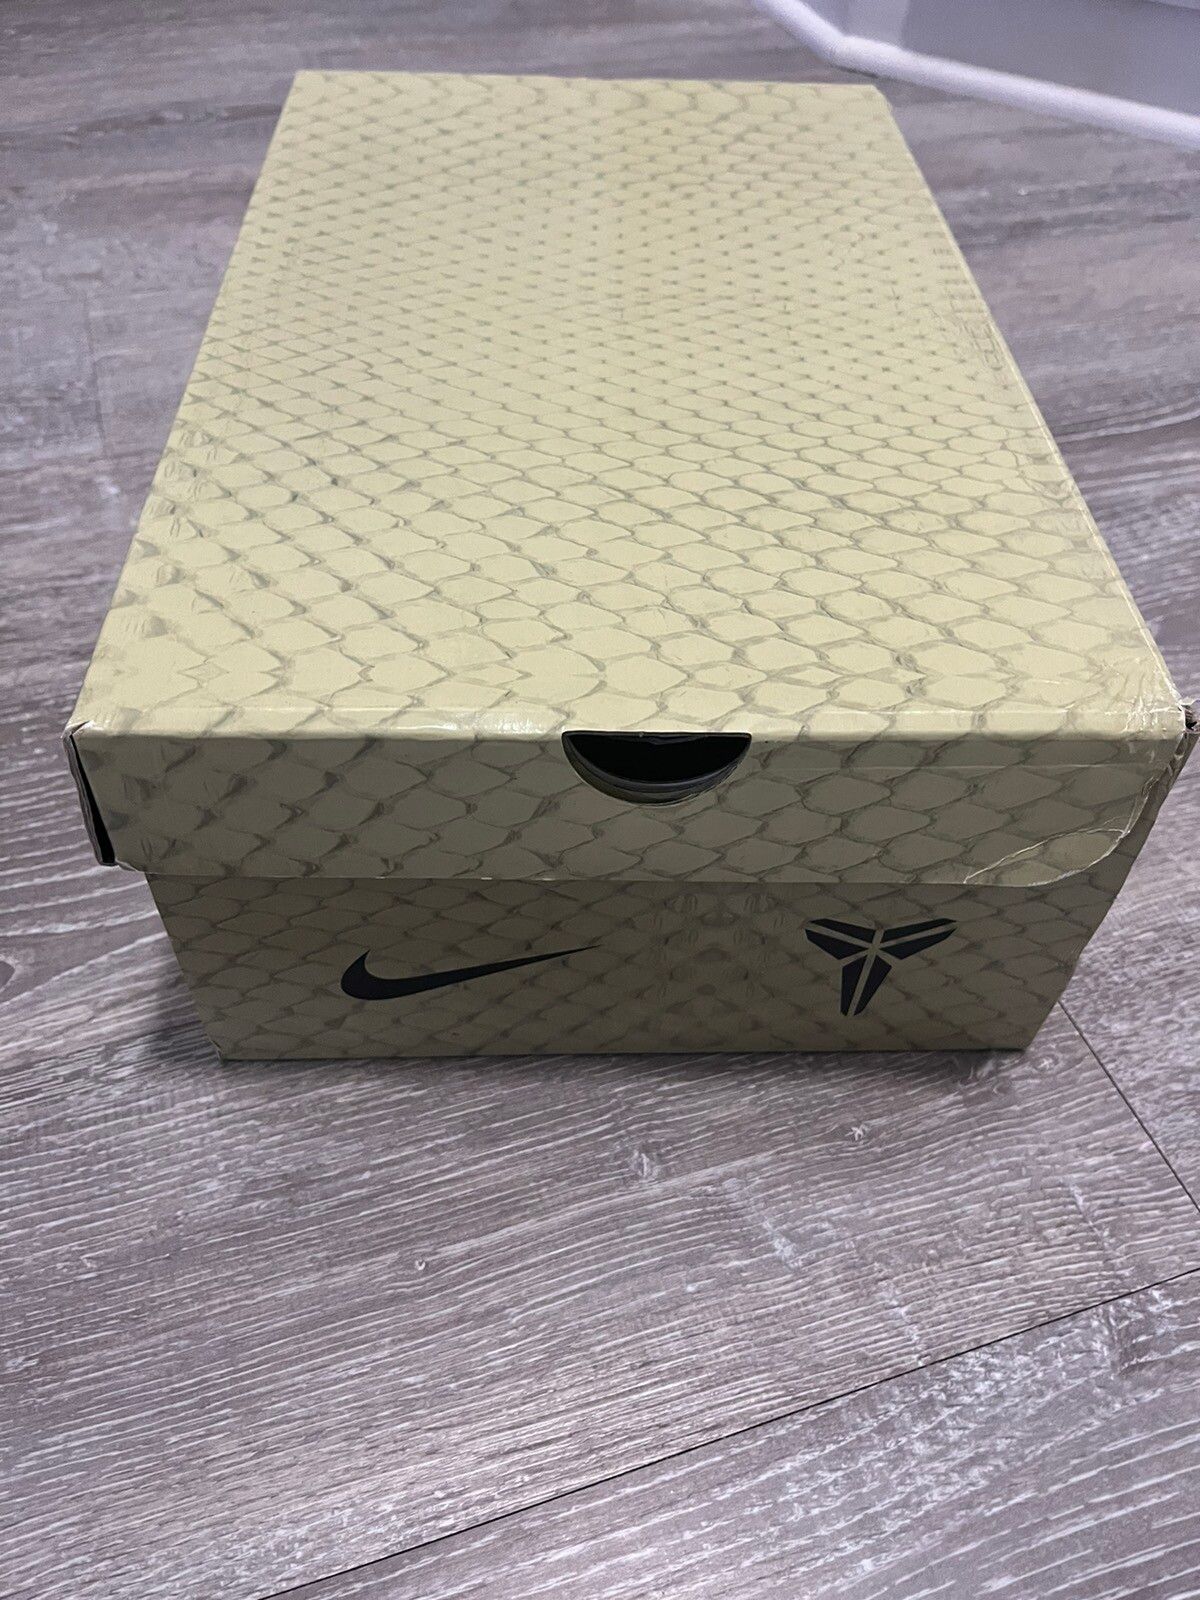 Nike Kobe 9 ELITE Sequoia size 11 Size US 11 / EU 44 - 7 Thumbnail